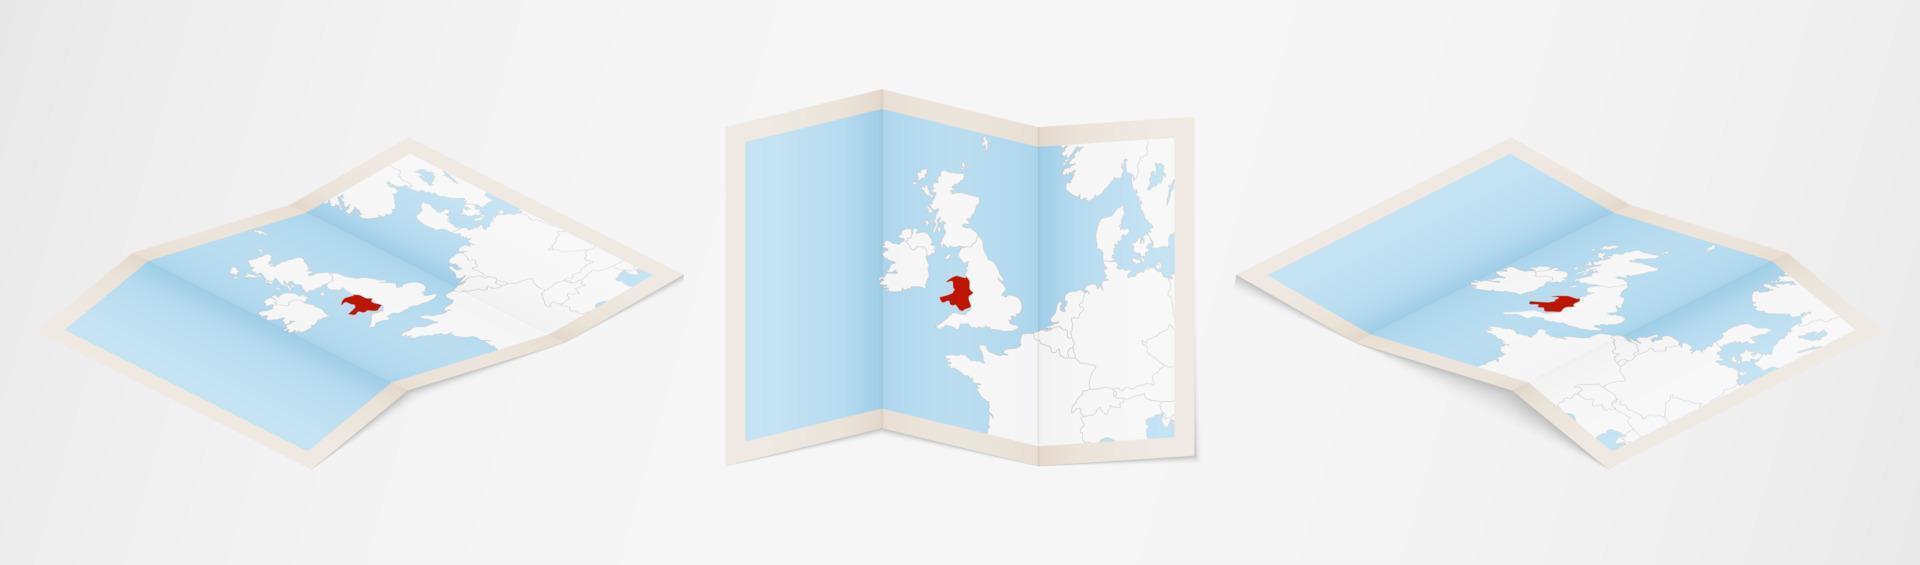 carte pliée du Pays de Galles en trois versions différentes. vecteur